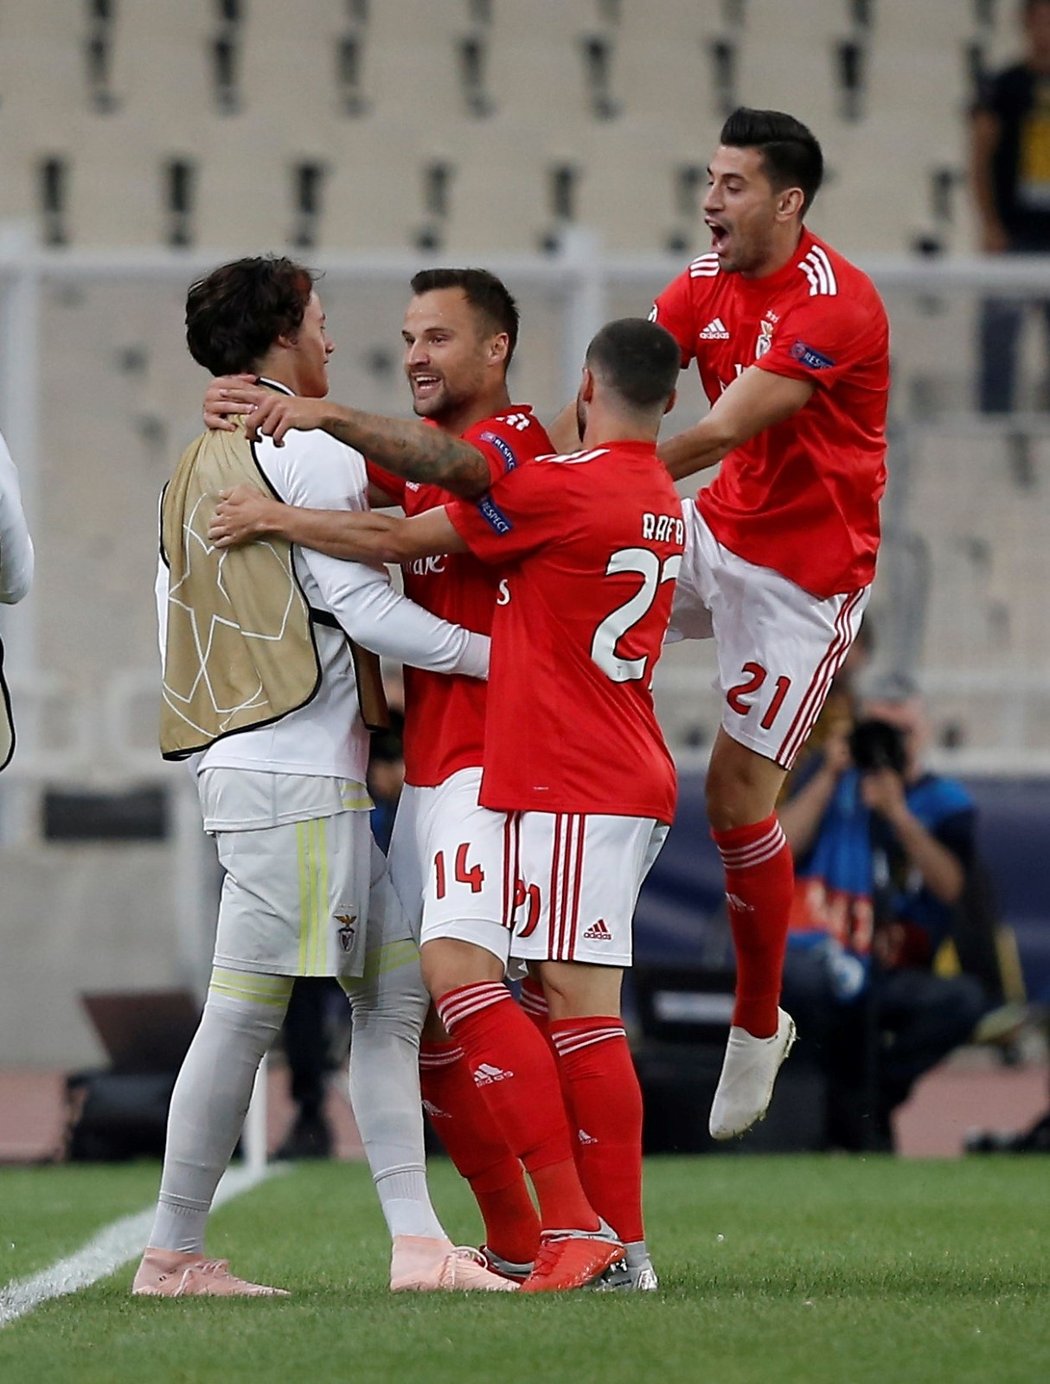 Radost fotbalistů Benfiky Lisabon z gólu do sítě AEK Atény v zápase Ligy mistrů